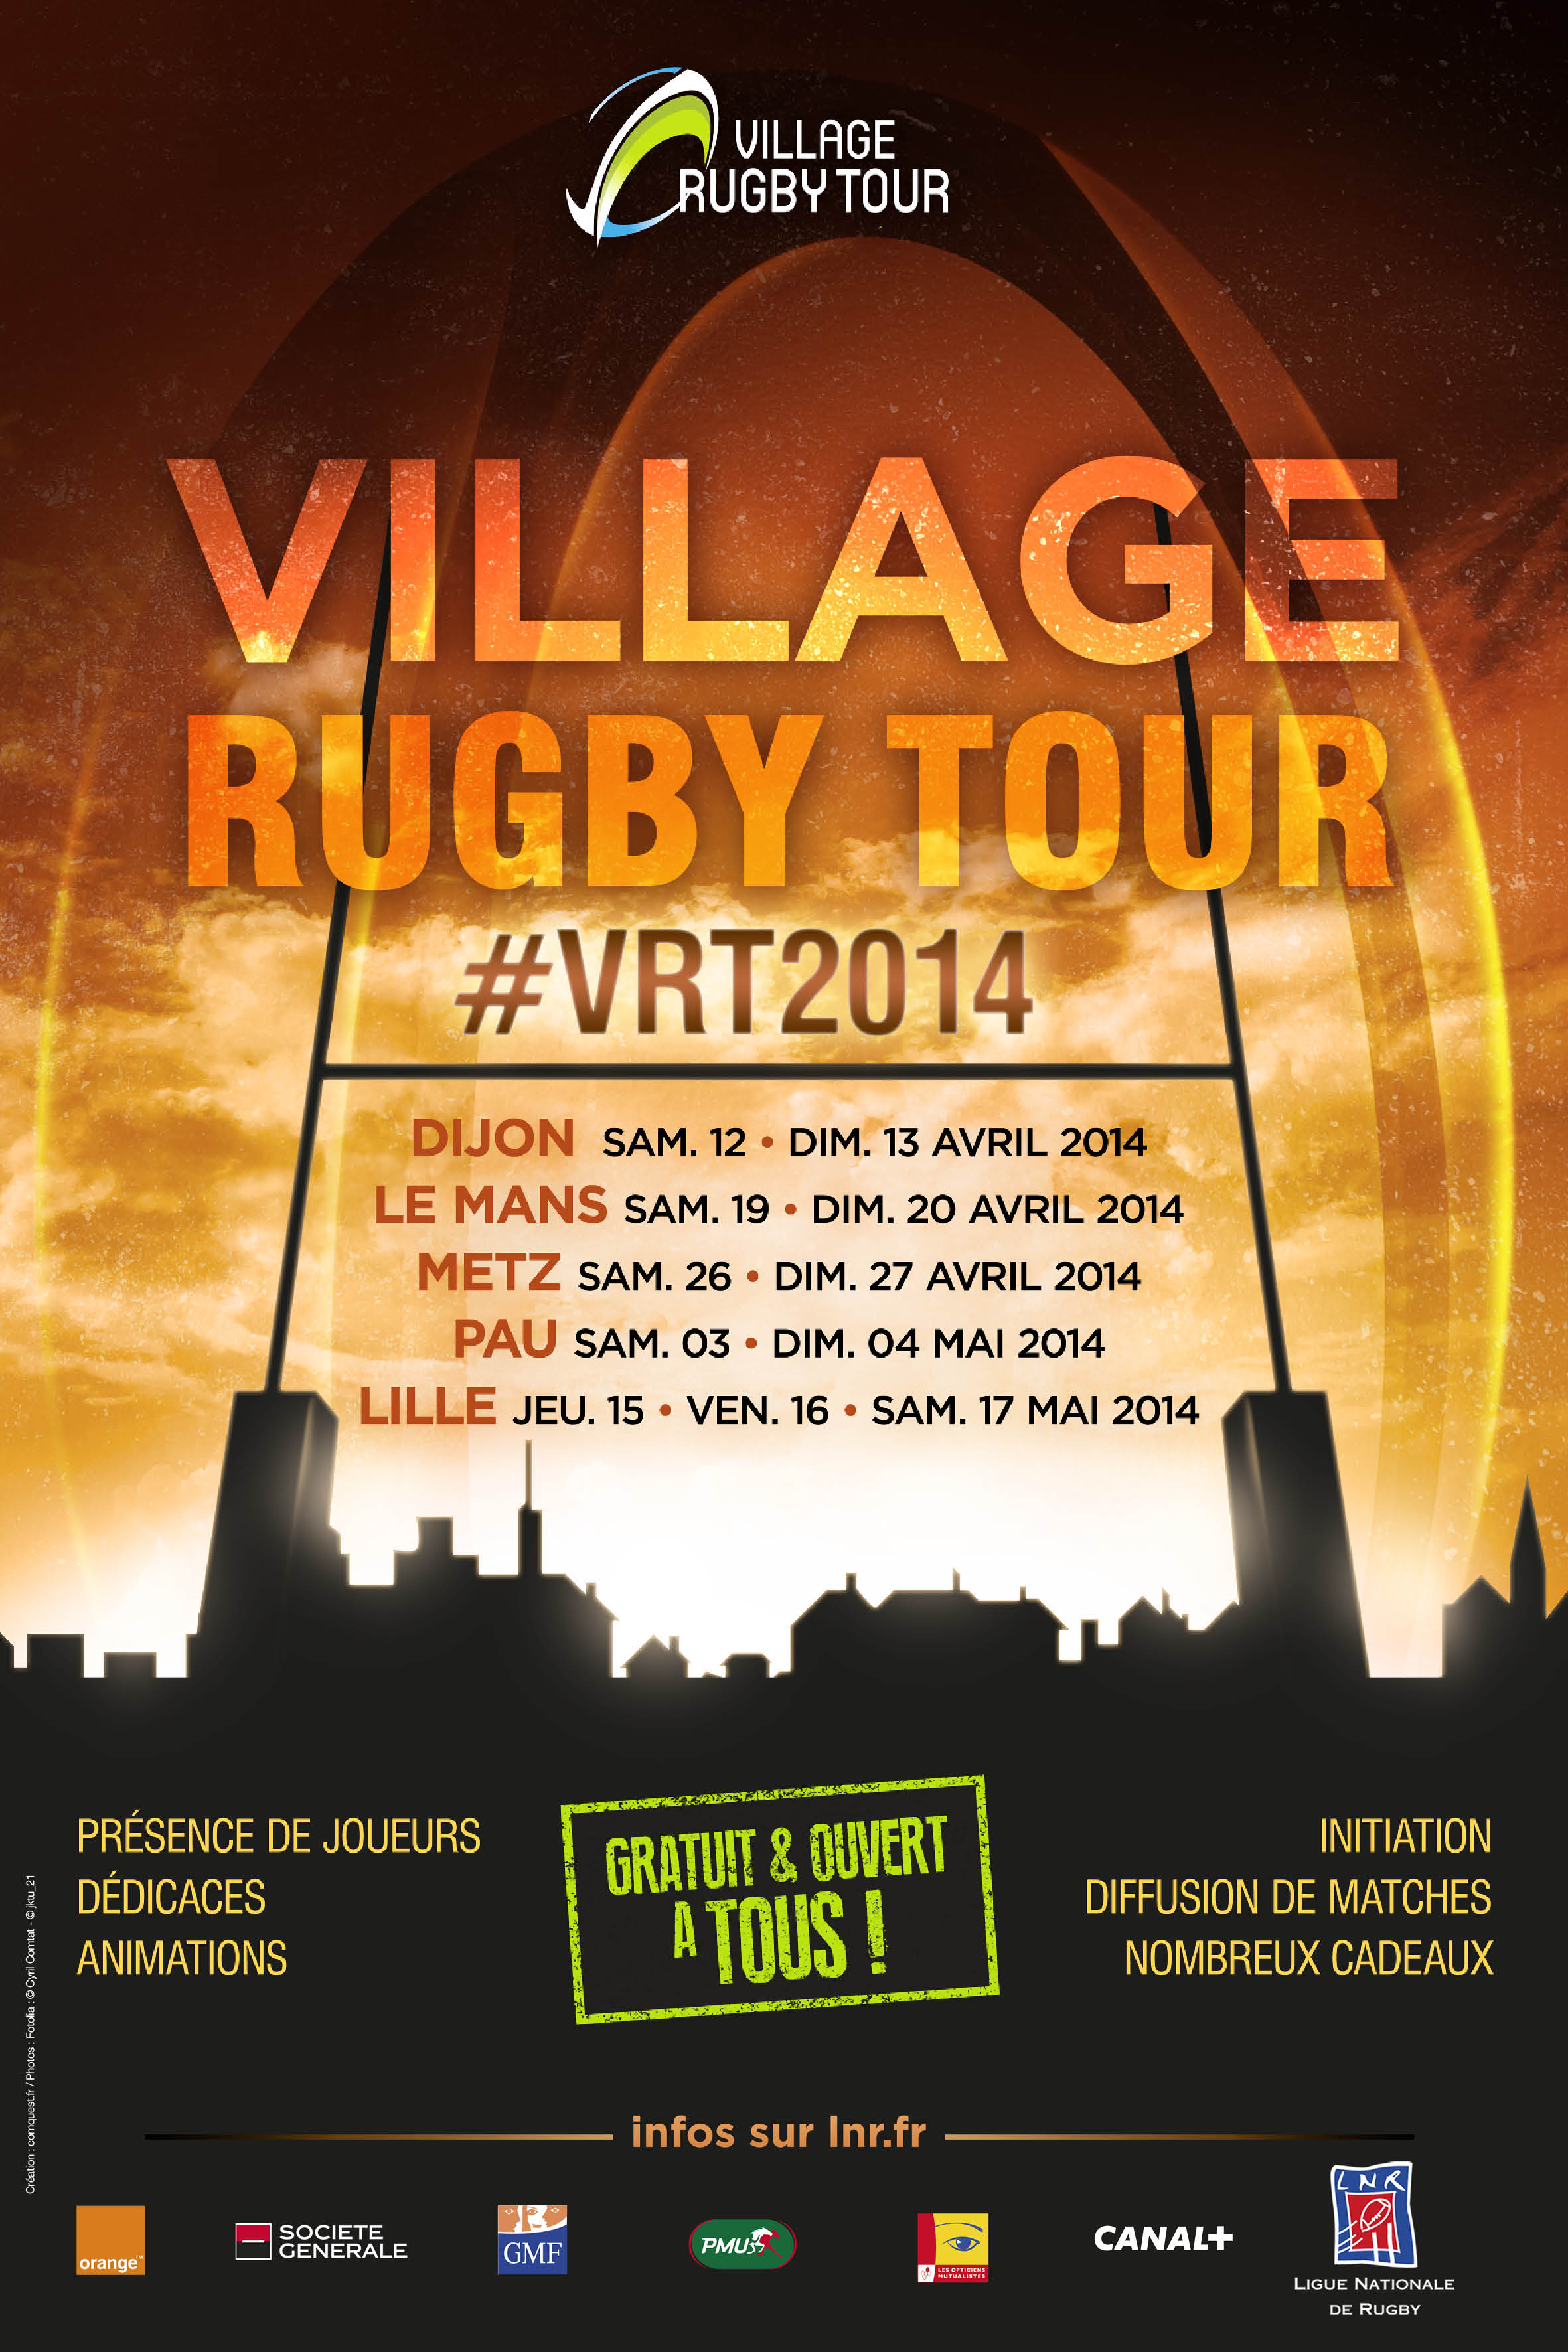 Le Village Rugby Tour 2014 crée l’événement!